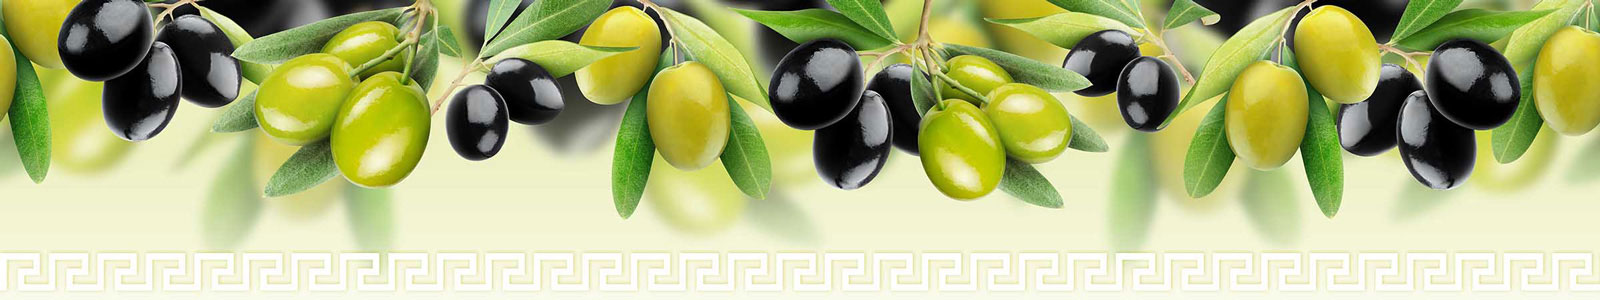 №3945 - Зеленые и черные оливки